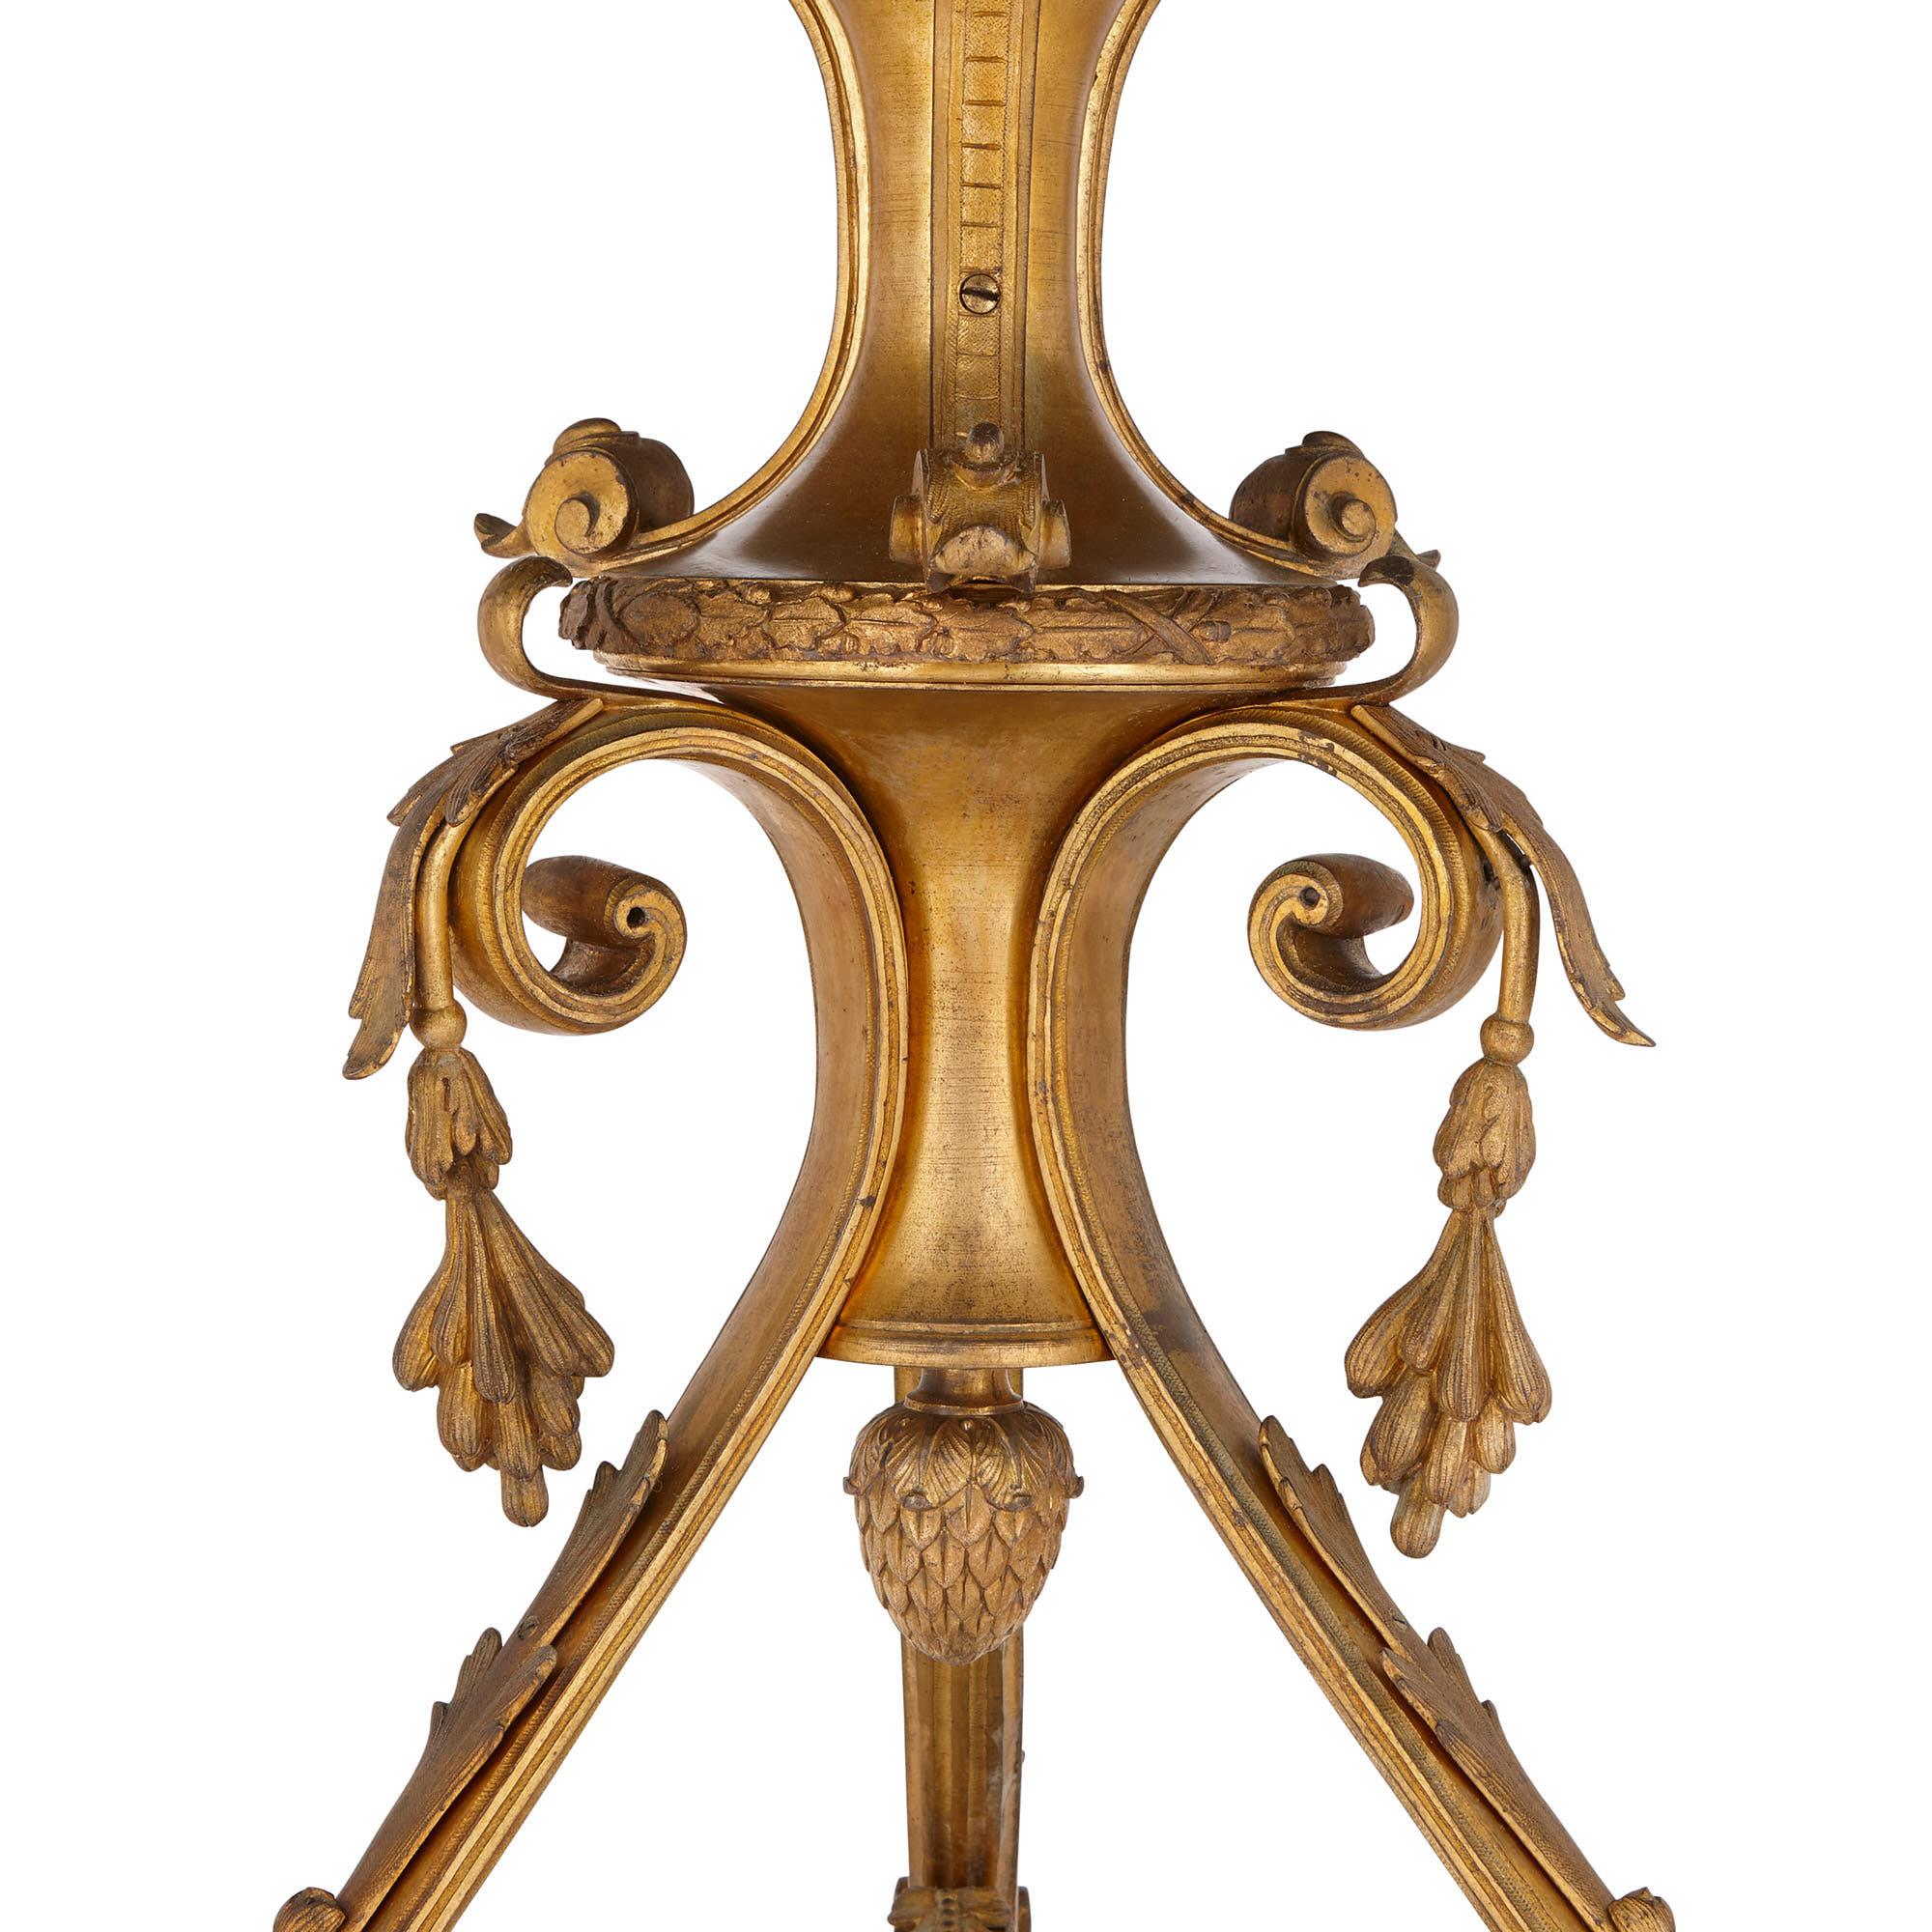 Dieses russische Gueridon (runder Beistelltisch) ist aus wunderschön kontrastierendem grünen Malachit und vergoldeter Bronze gefertigt. Der Tisch stammt aus dem 19. Jahrhundert und veranschaulicht die Mode für Malachitmöbel in Russland zu dieser